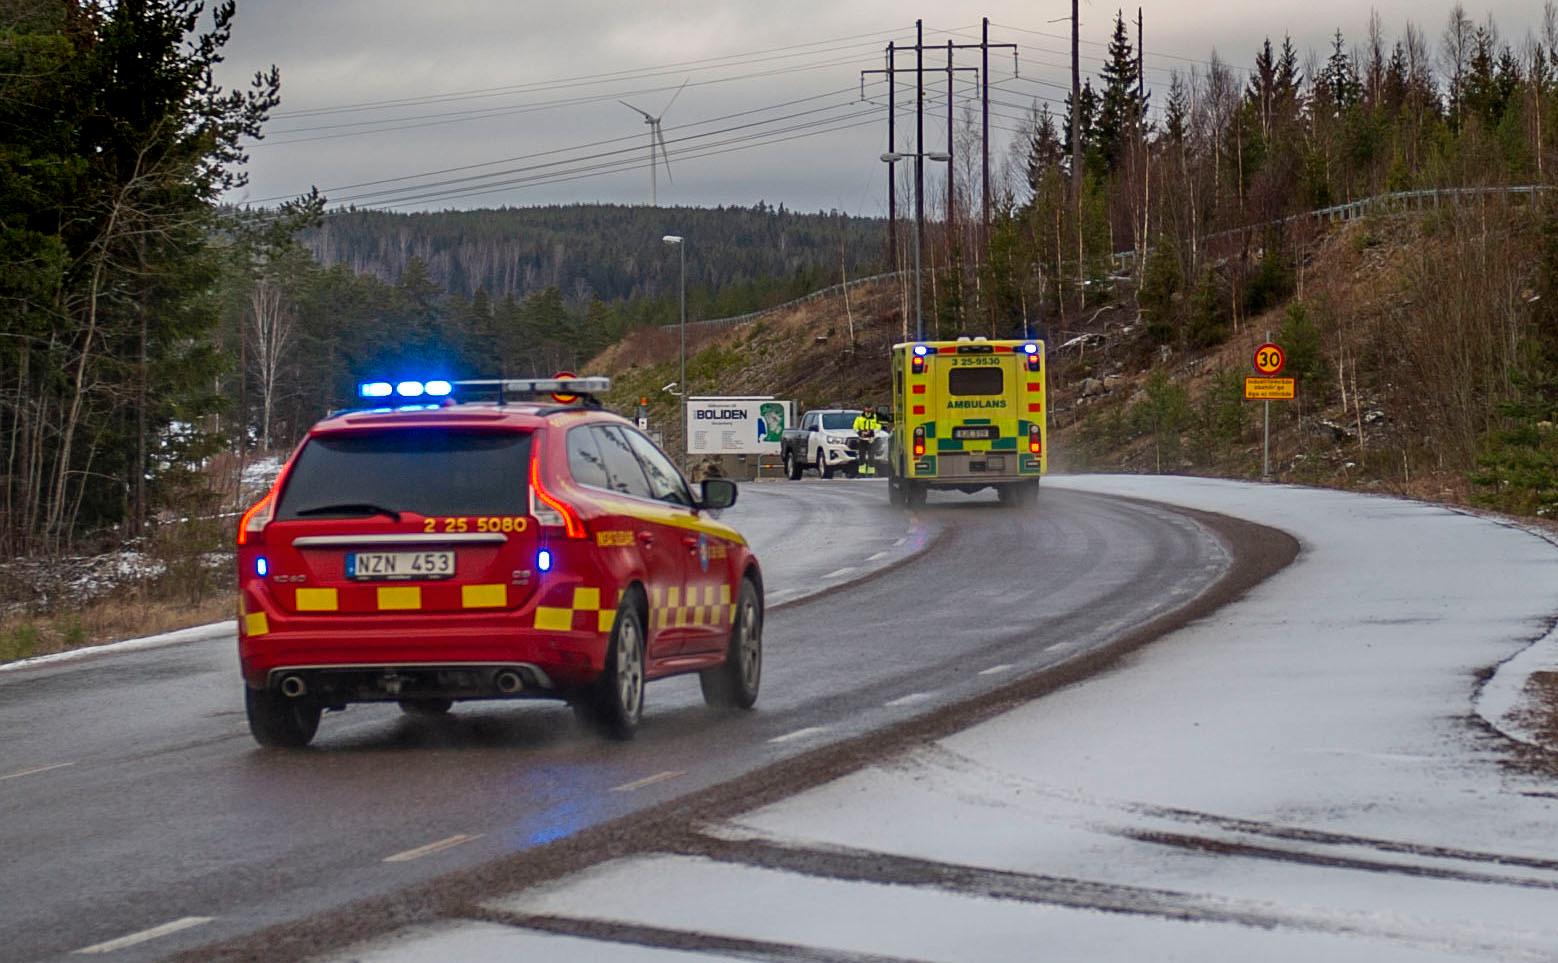 Polis, ambulans och räddningstjänst larmades i dag till Garpenbergs gruva i Hedemora kommun i Dalarna.